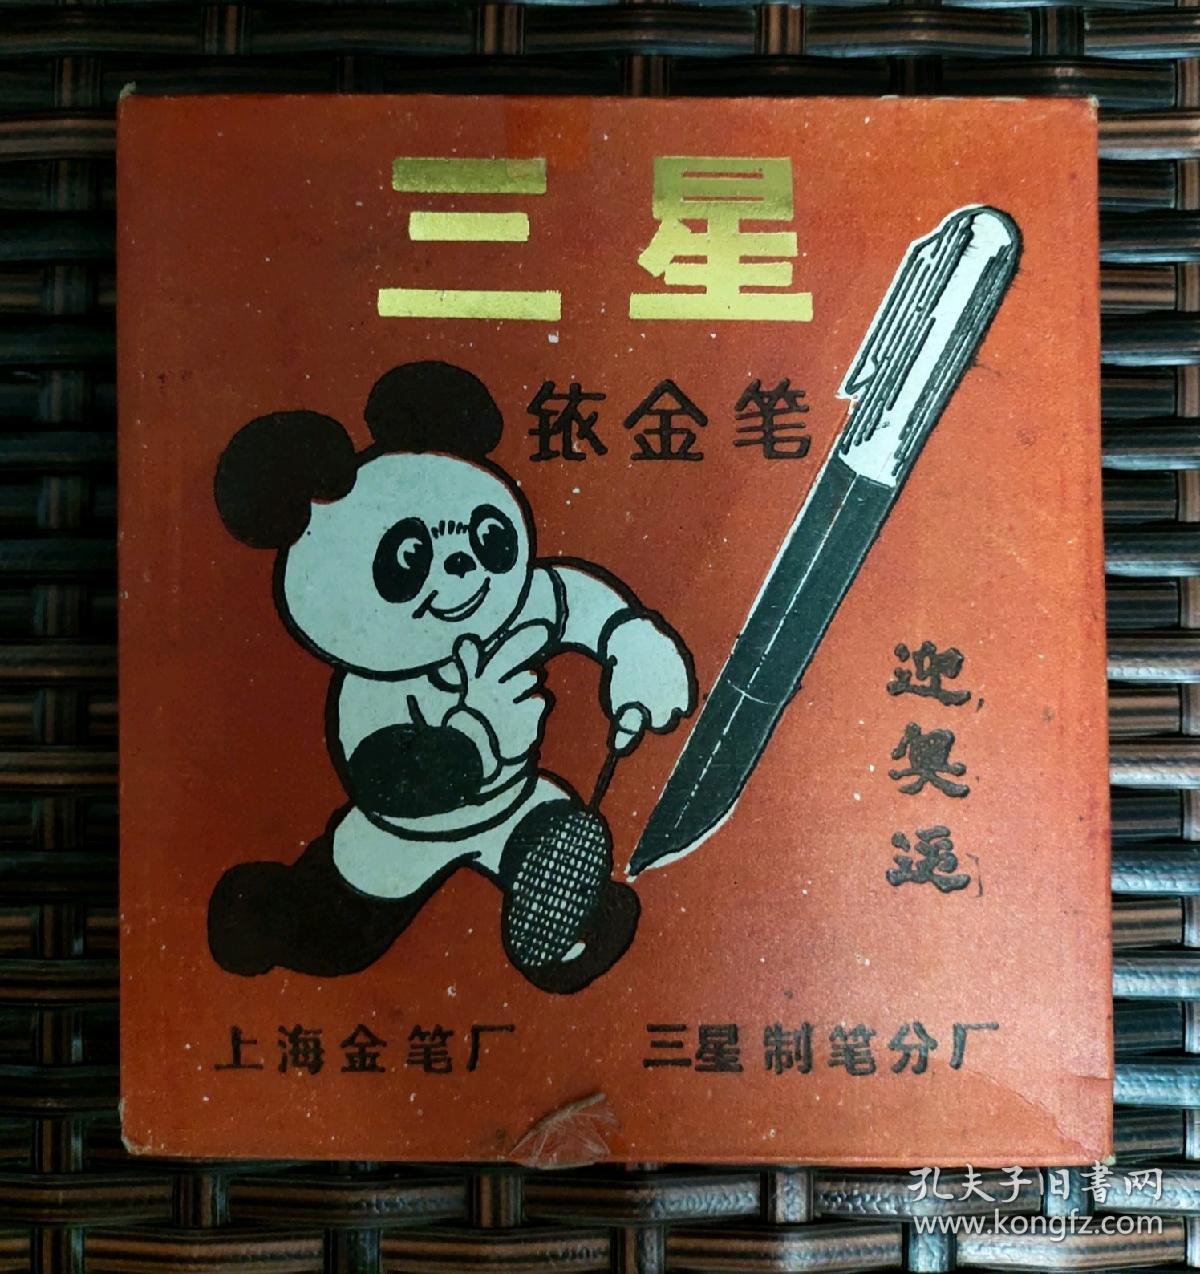 纪念毛泽东同志诞辰100周年钢笔（全新）
上海金笔厂，老钢笔，三星牌铱金笔，全新库存，仔细看图，标价为一支价格。实物实拍，价格不高，欢迎收藏。